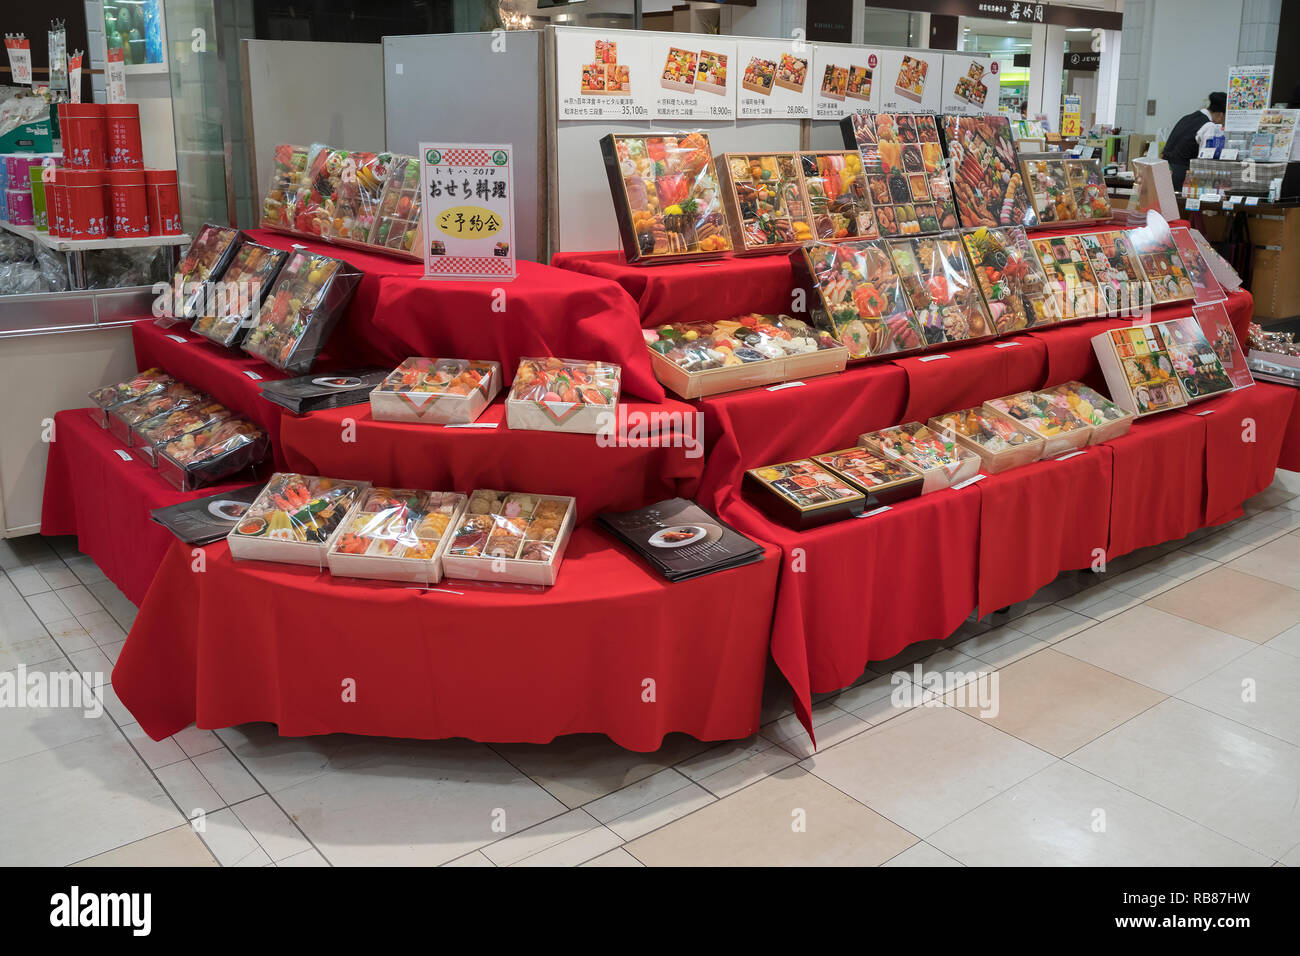 Beppu, Japan - 3. November 2018: schön verpackte Geschenke und Geschenke mit Nahrung und Obst, sogenannte Omiyage im Supermarkt des Kaufhauses Stockfoto